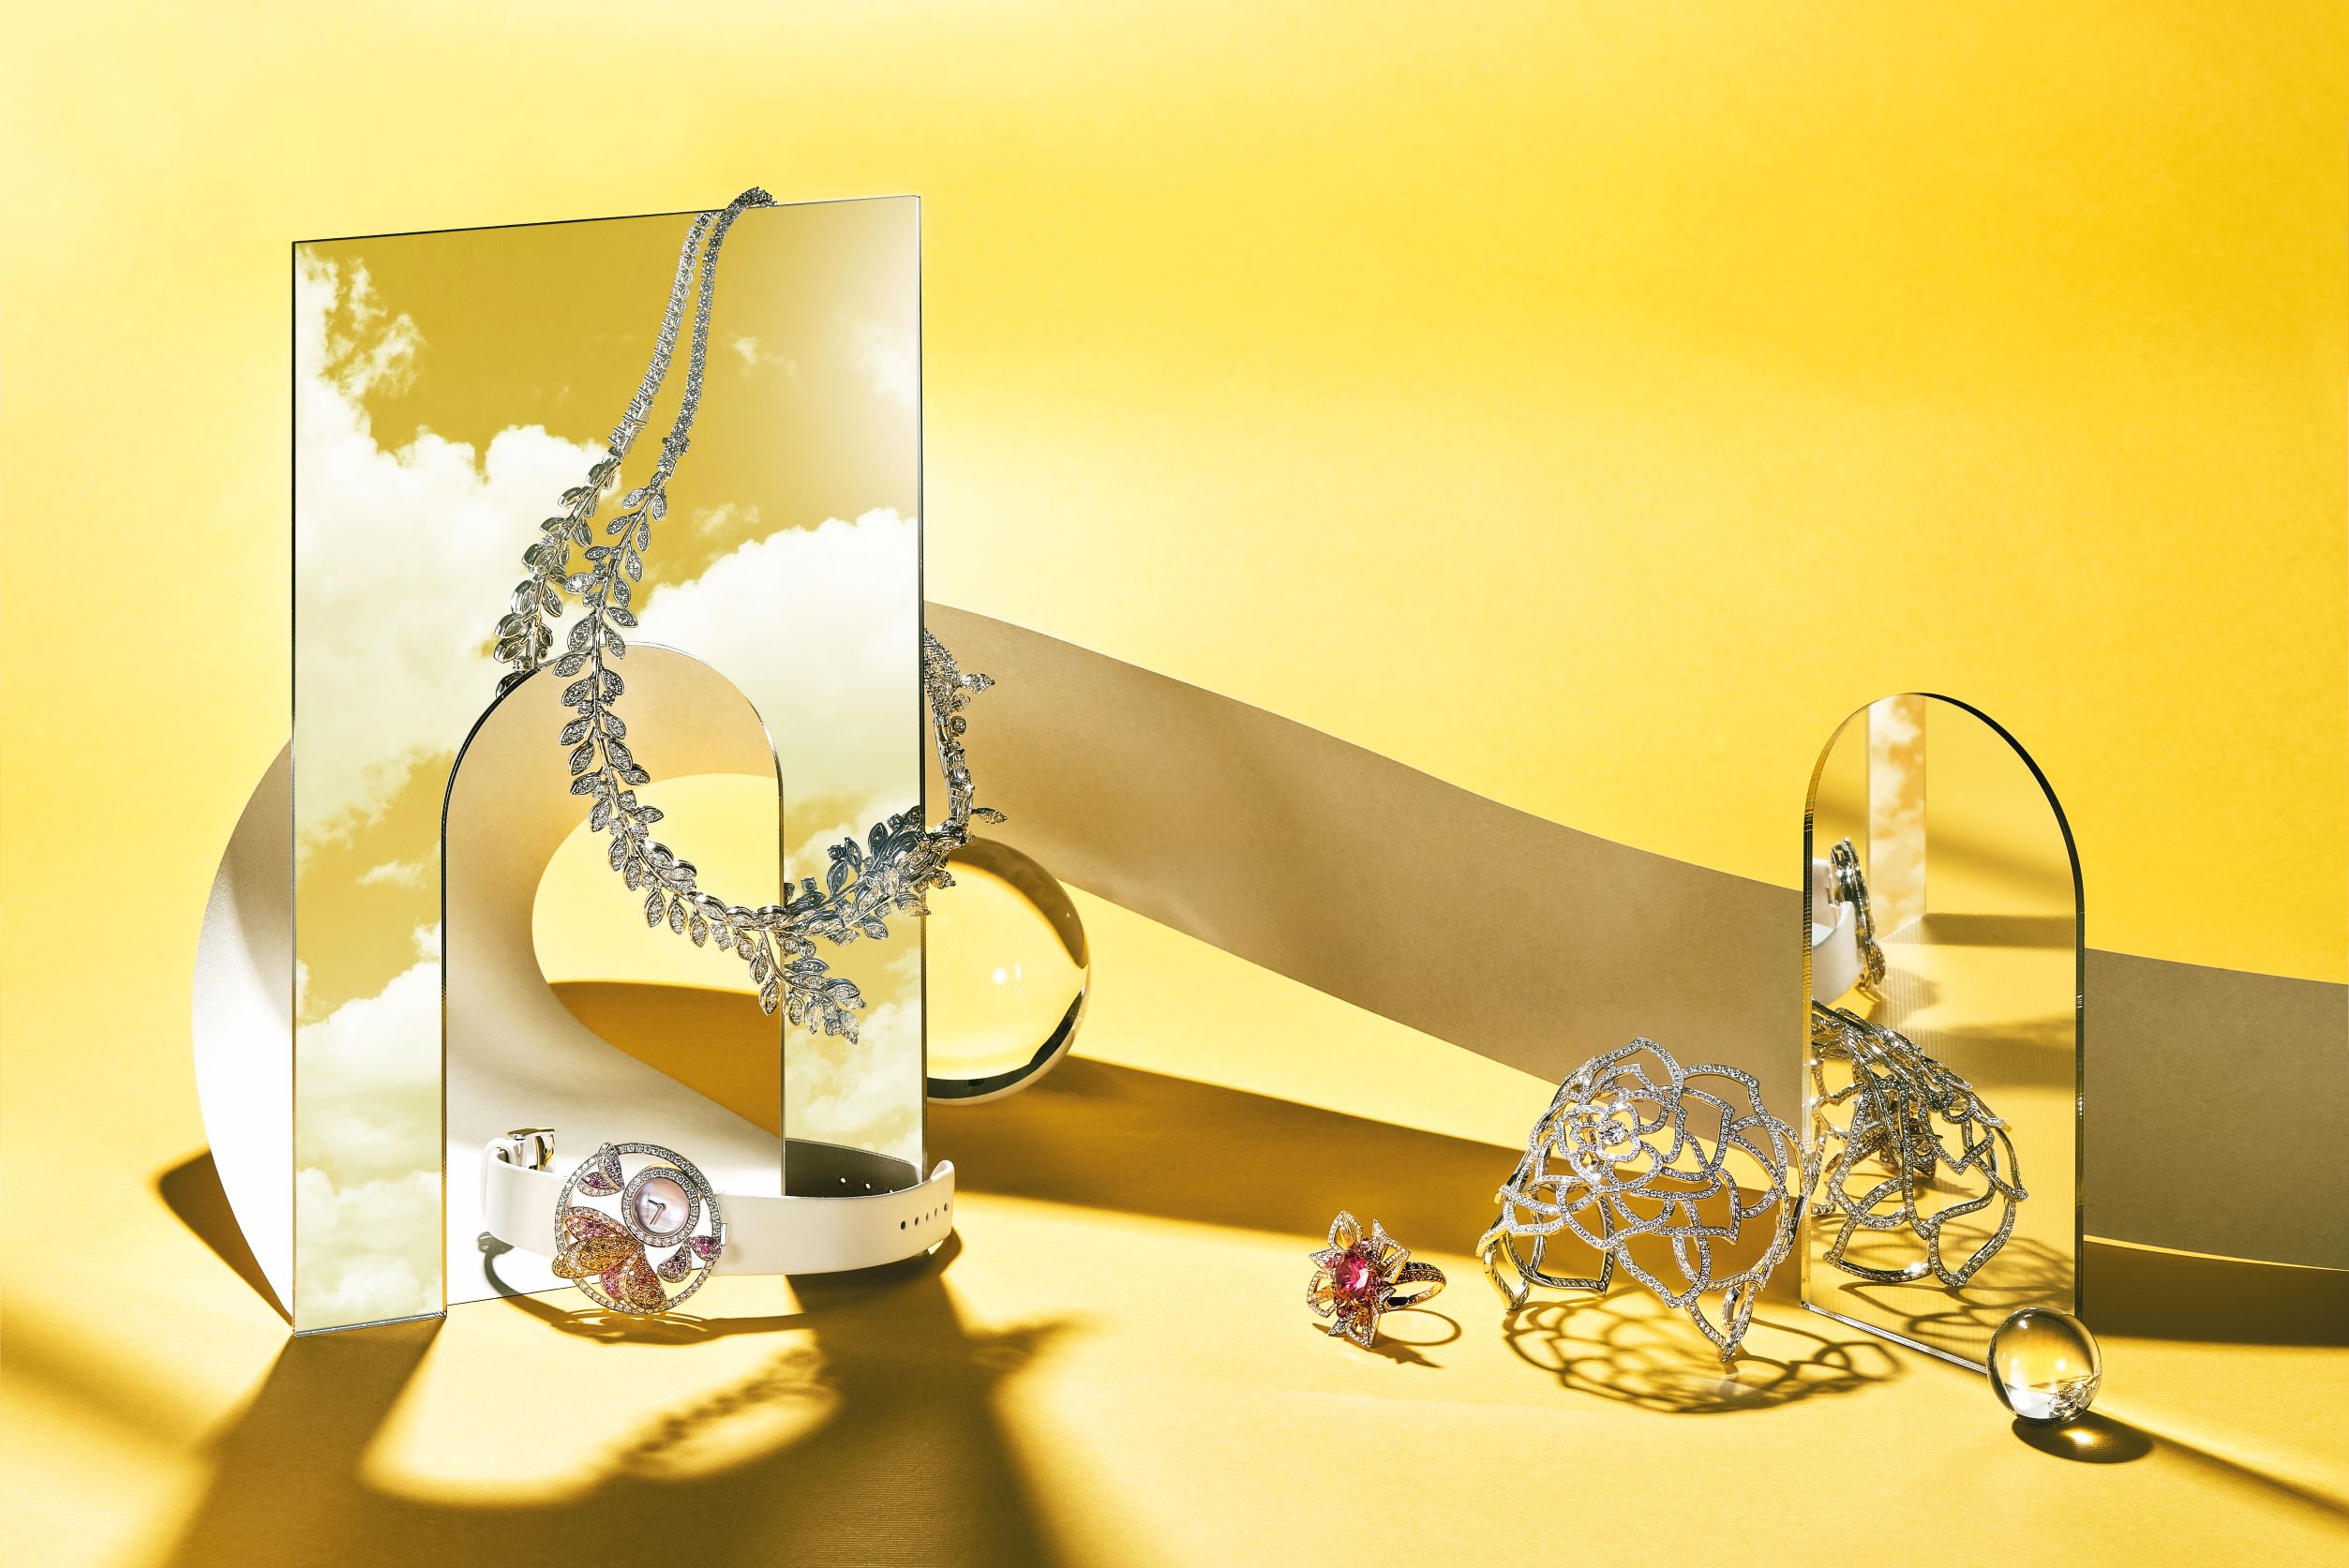 由左至右：Garden Party 頂級珠寶鑽石項鍊，Piaget；Ajourée Bouquet d'Ailes 鏤刻系列薄翼花束腕錶，Boucheron；Fleur de Lotus 戒指，Boucheron；Garden Party 頂級珠寶鑽石手鐲，Piaget